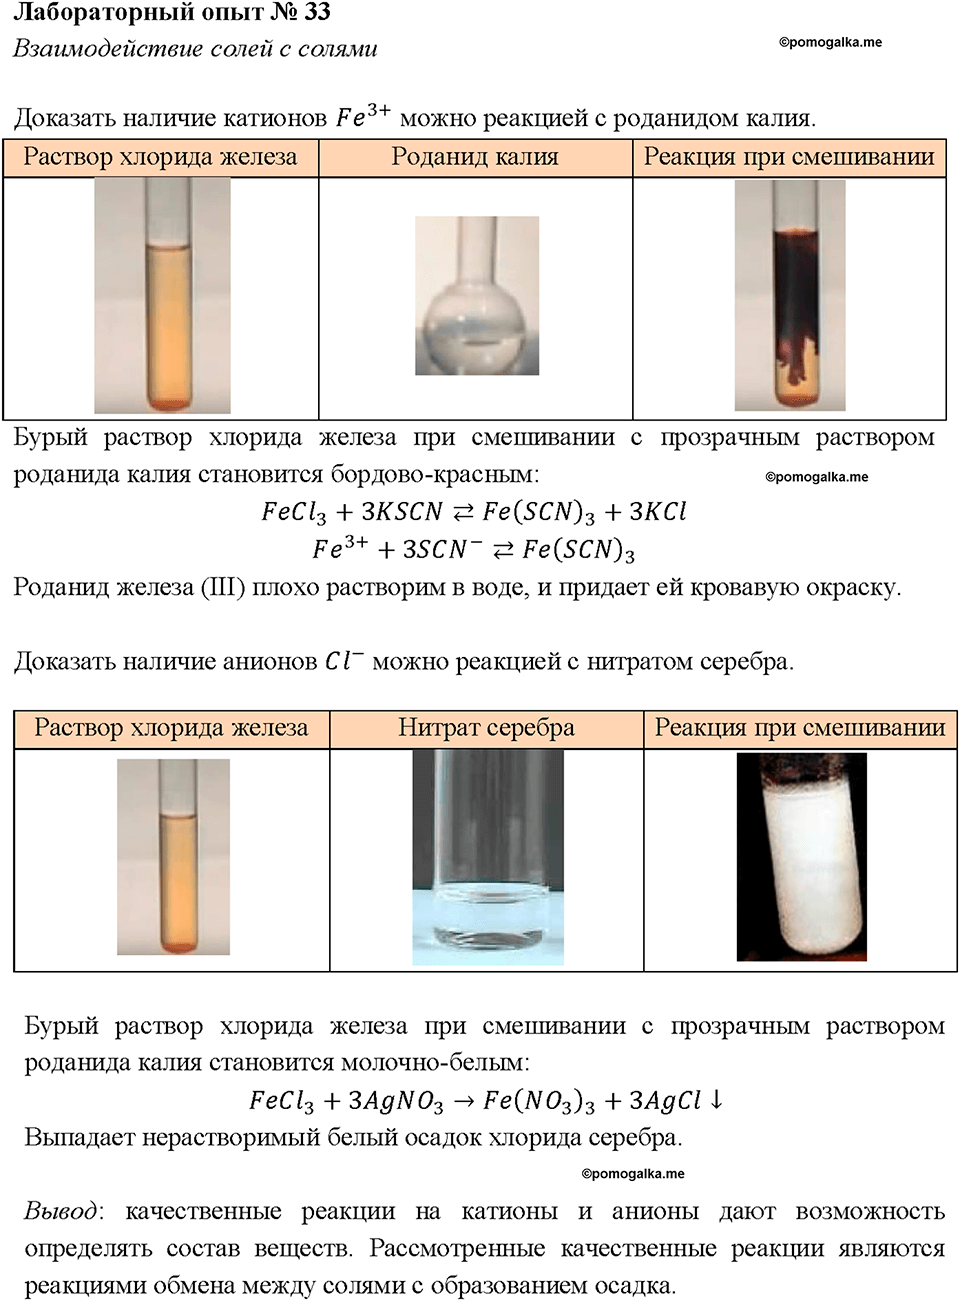 Лабораторный опыт 33. Взаимодействие солей с солями страница 256 химия 8 класс Габриелян